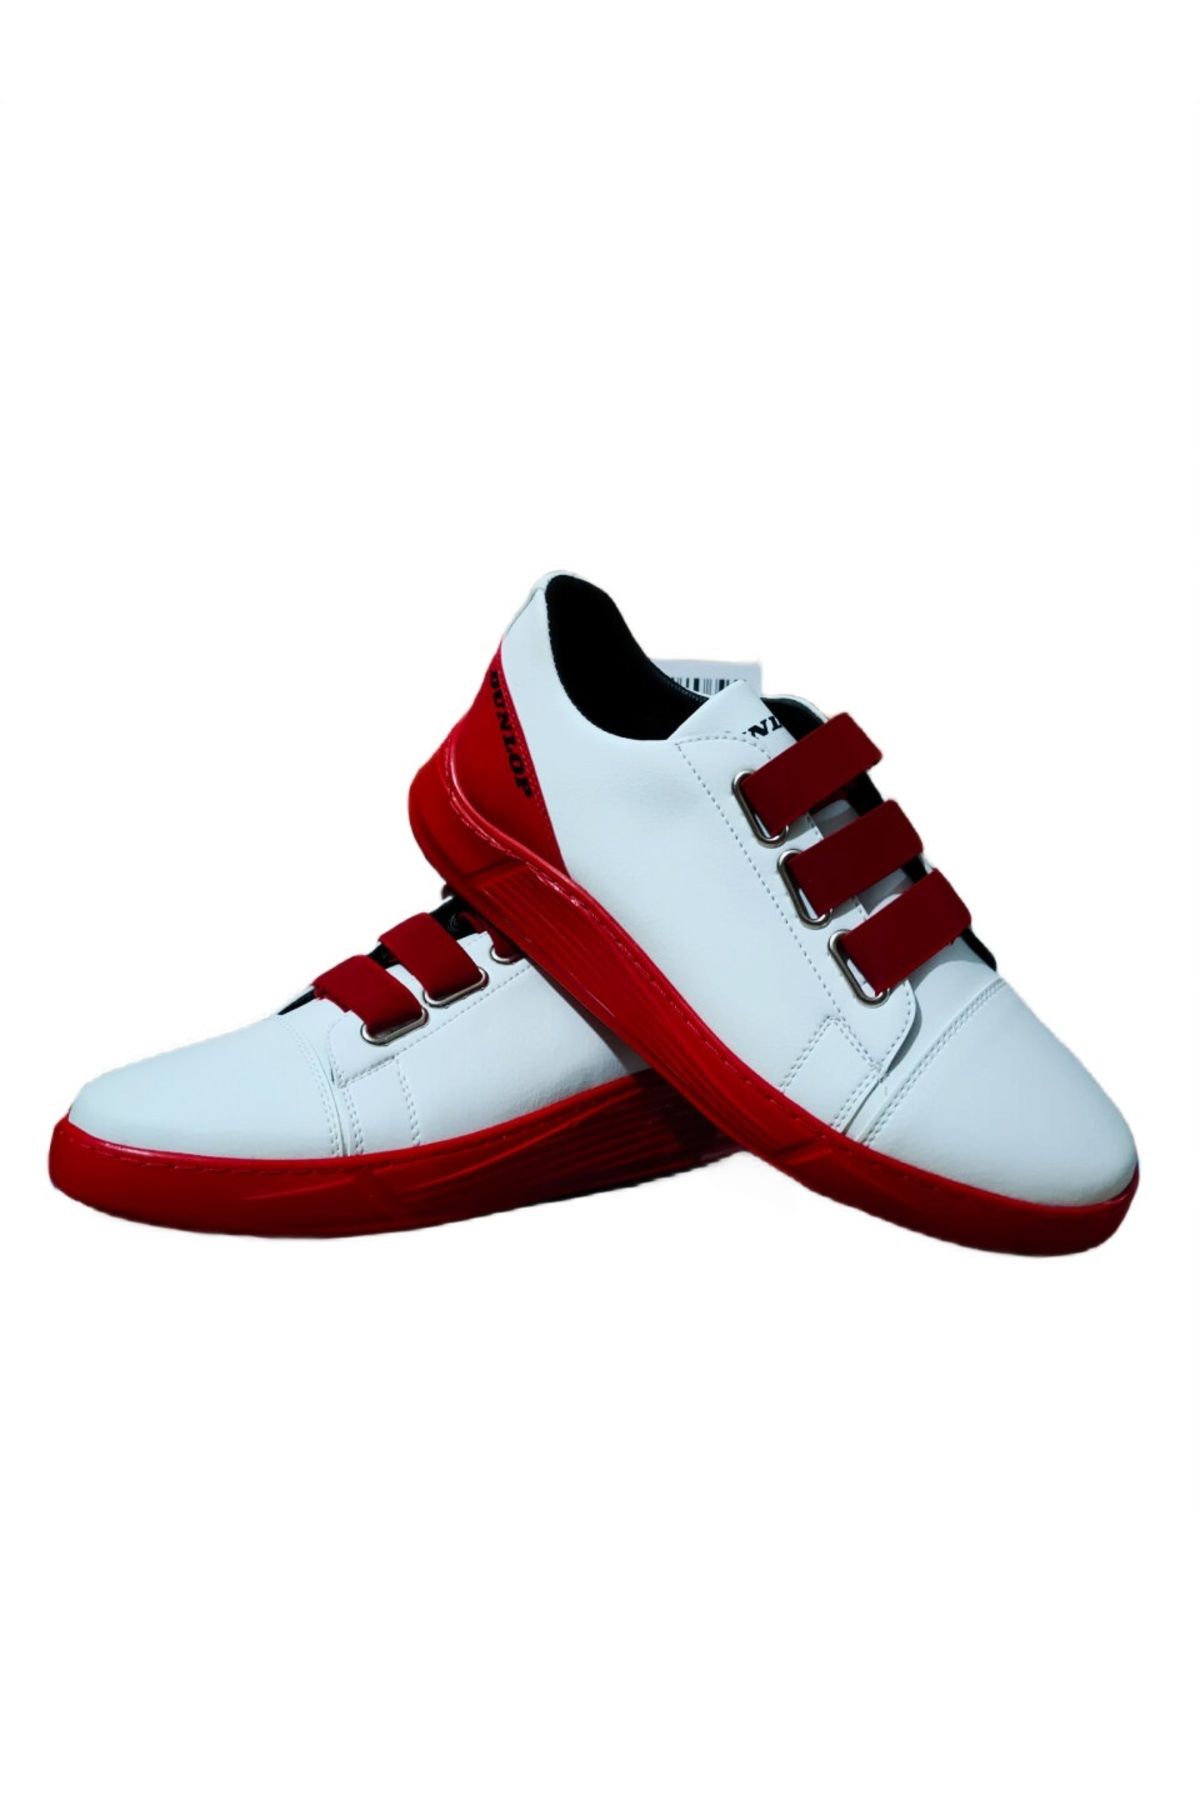 Dunlop Erkek Sneaker Günlük Spor Ayakkabı Beyaz-kırmızı 1207 V1